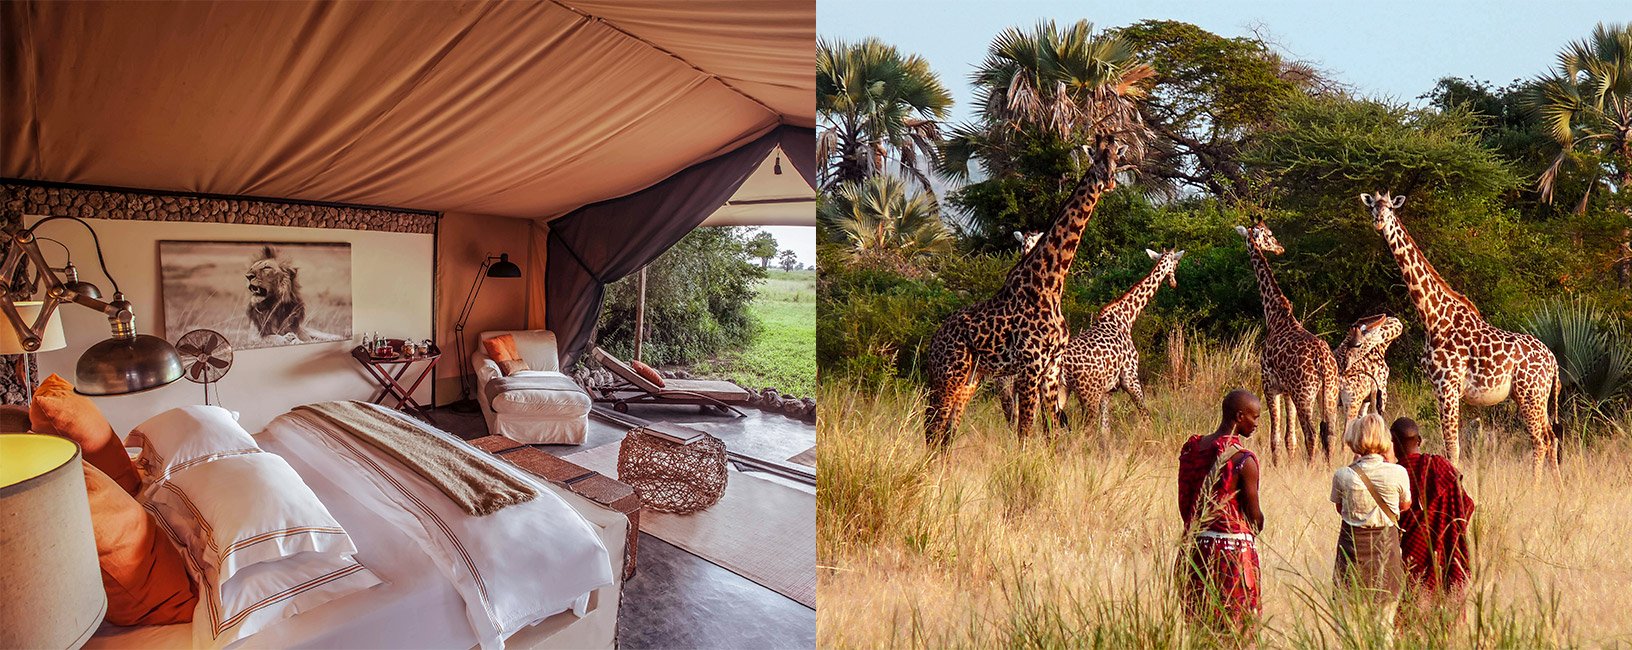 Tanzania Luxury Safari Experience With AfricanMecca Safaris